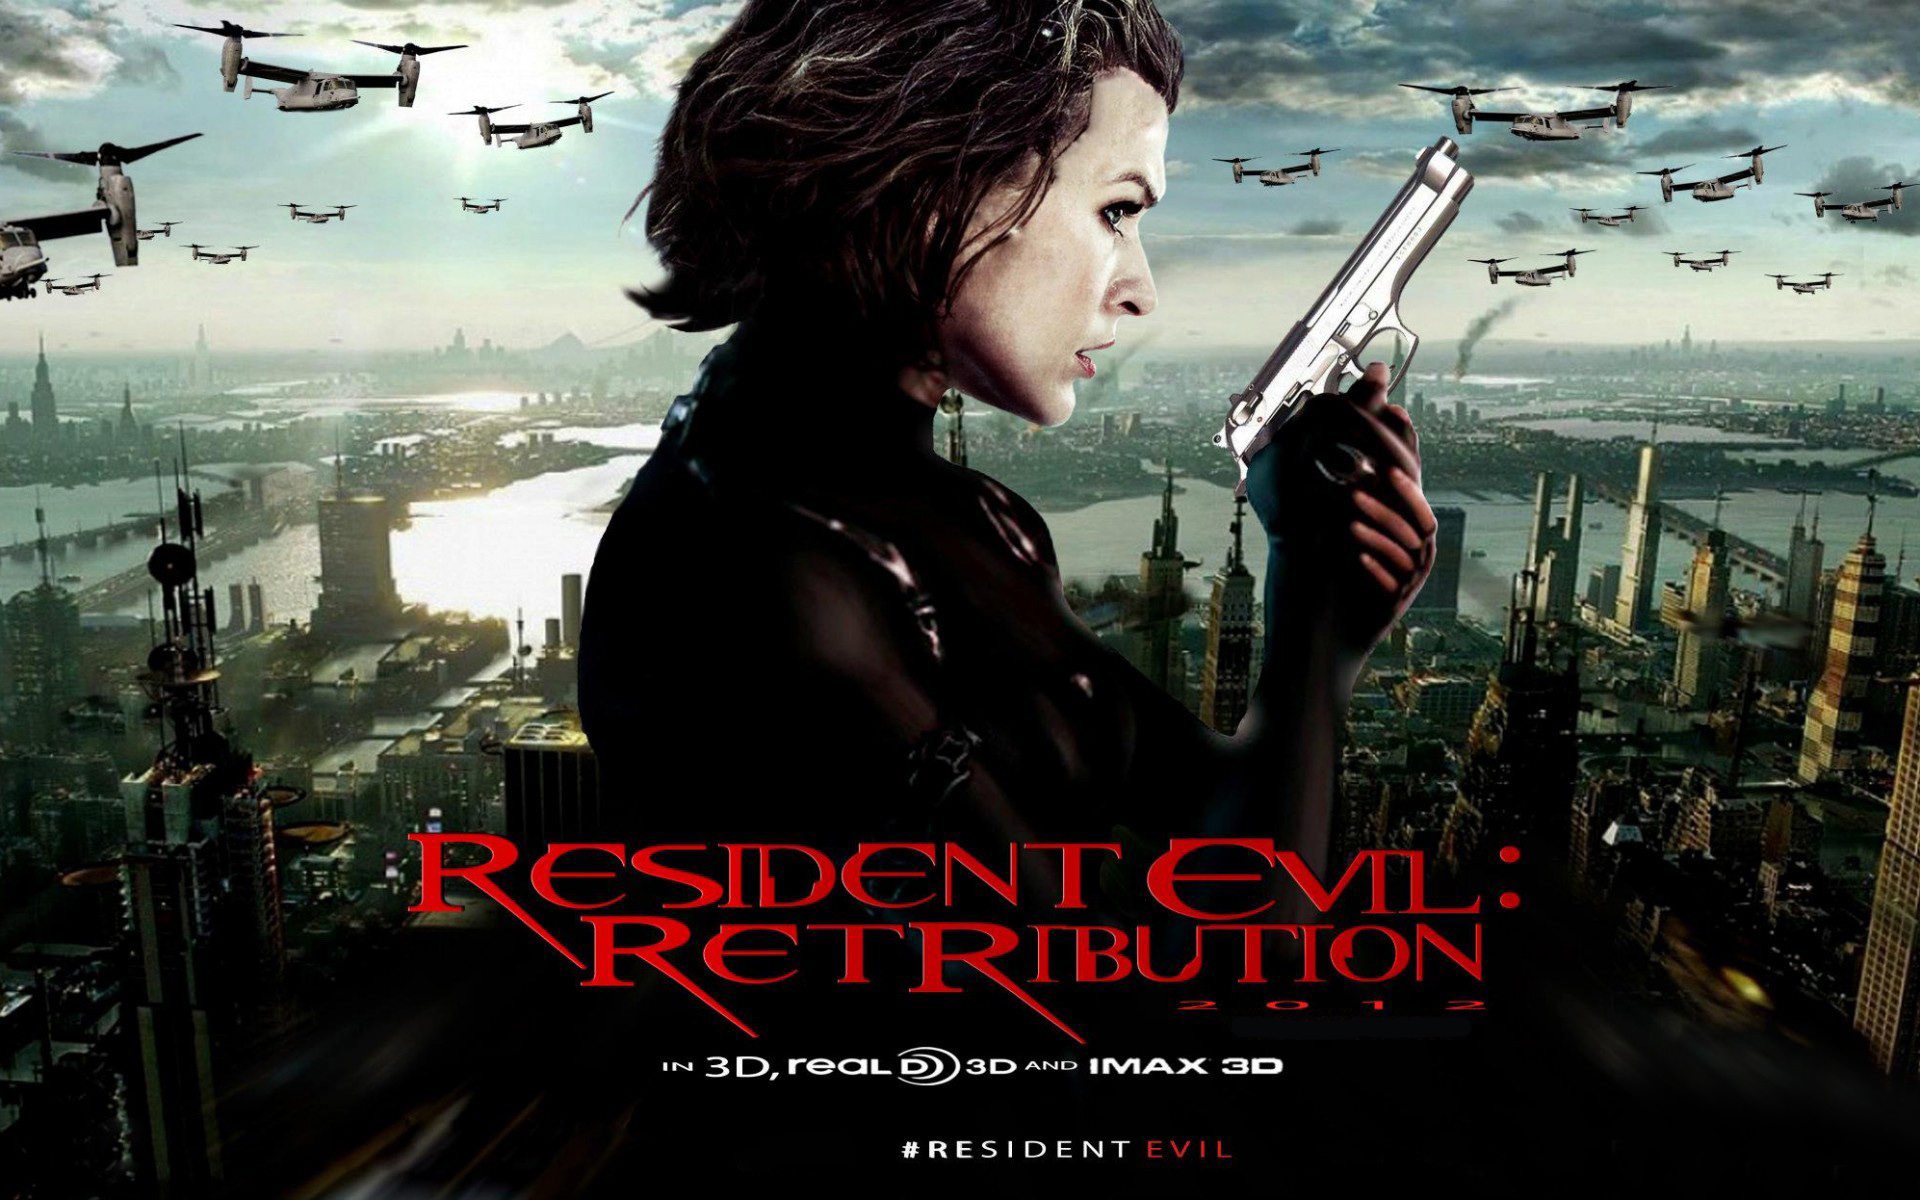 2012 Resident Evil 5 Retribution - Wallpaper, High ...